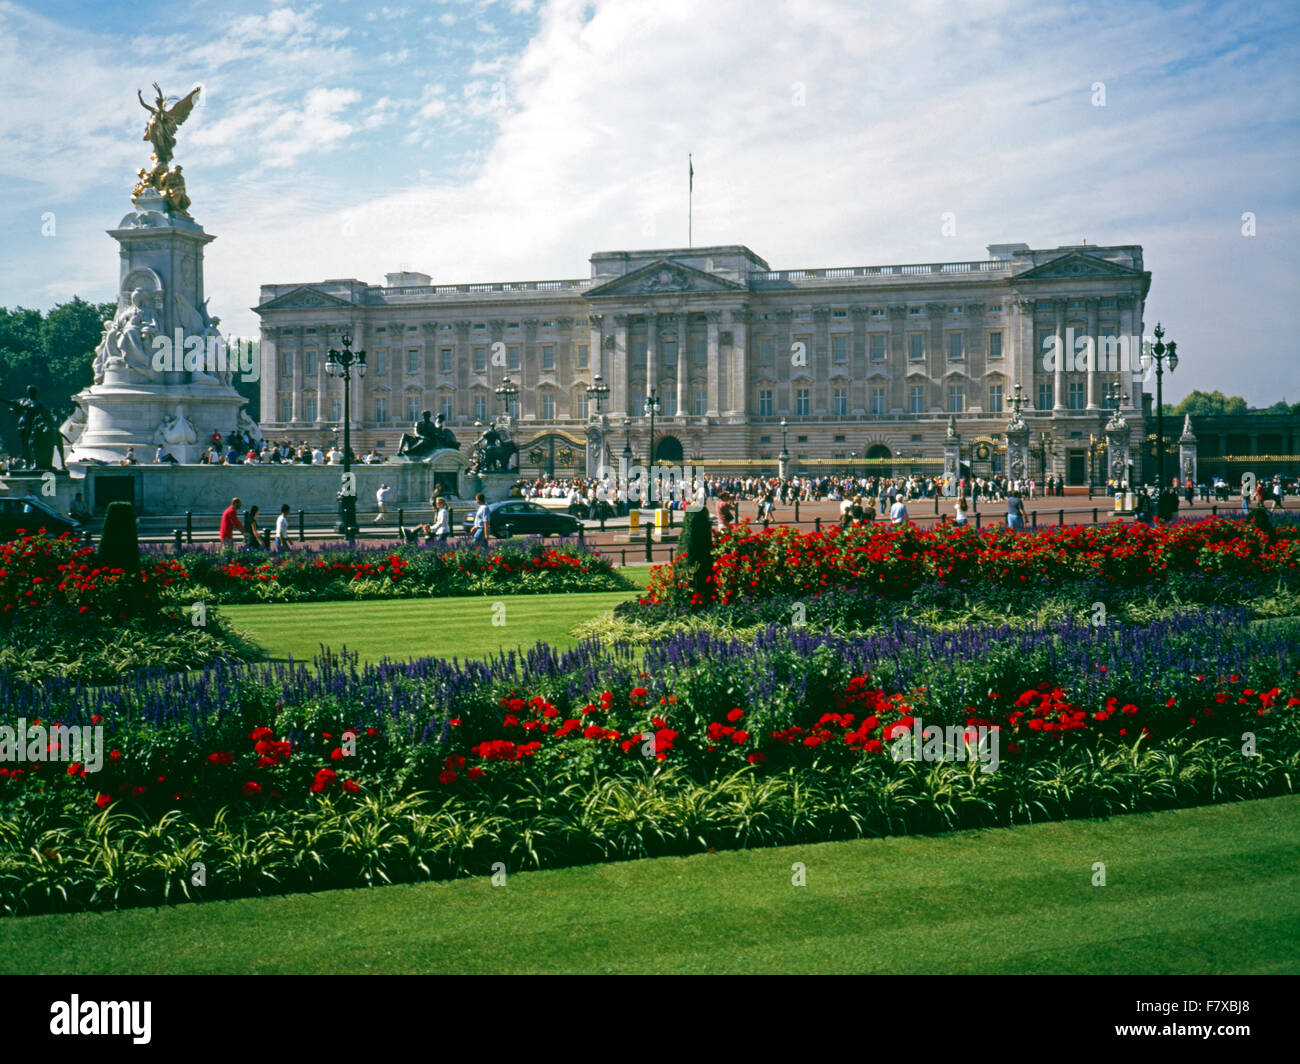 Le palais de Buckingham, Londres, Angleterre Banque D'Images